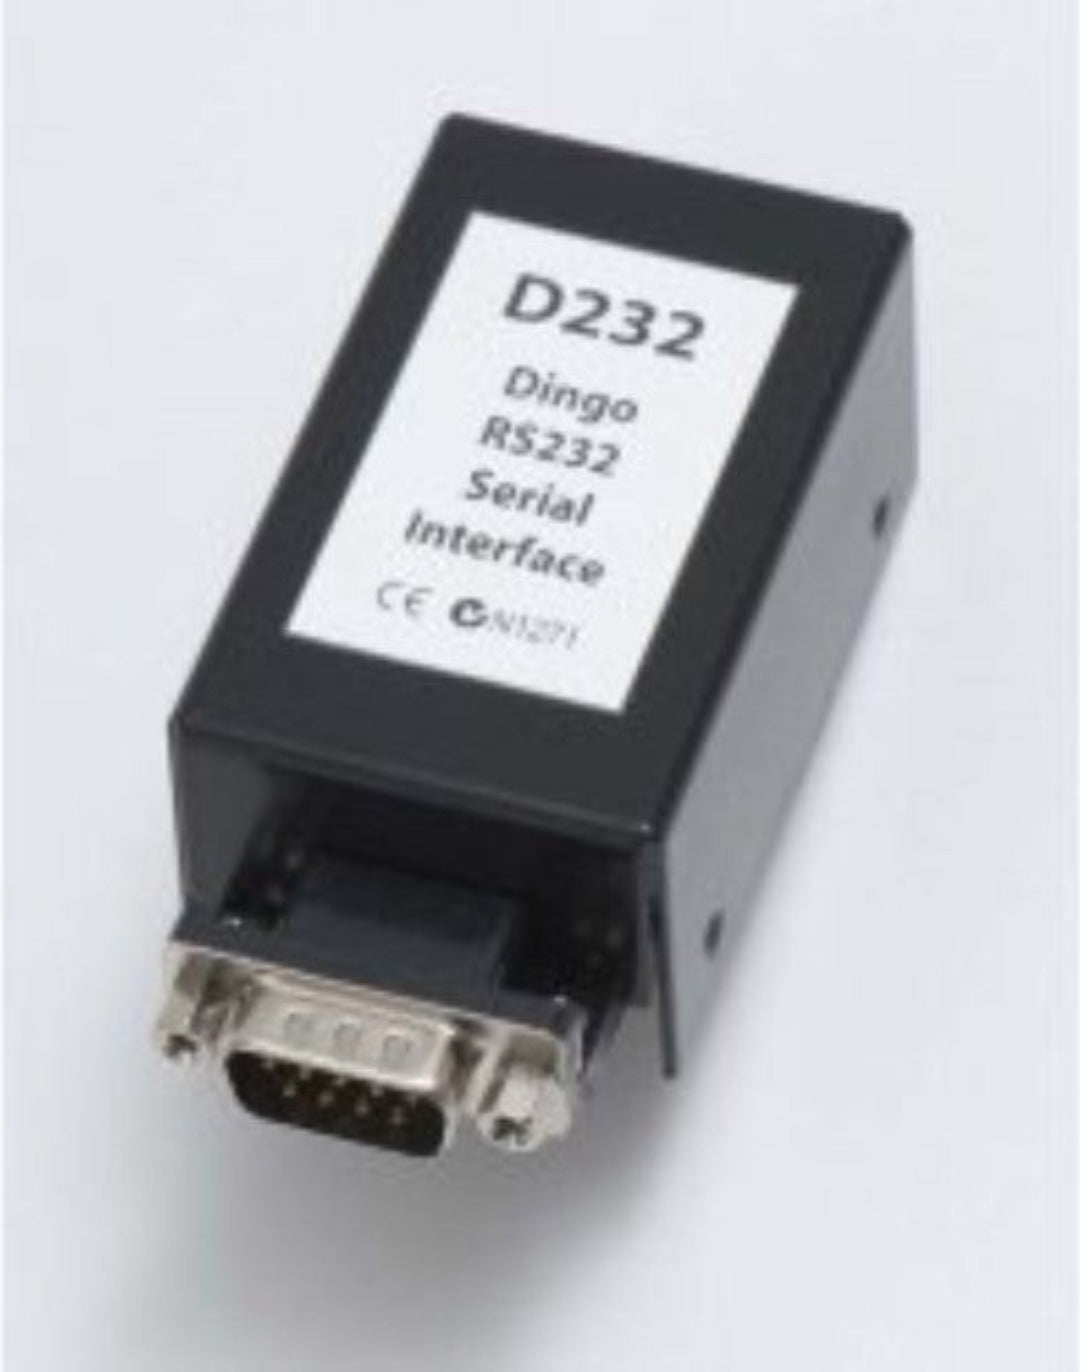 Plasmatronics Dingo Serial Interface Connection to PC D232